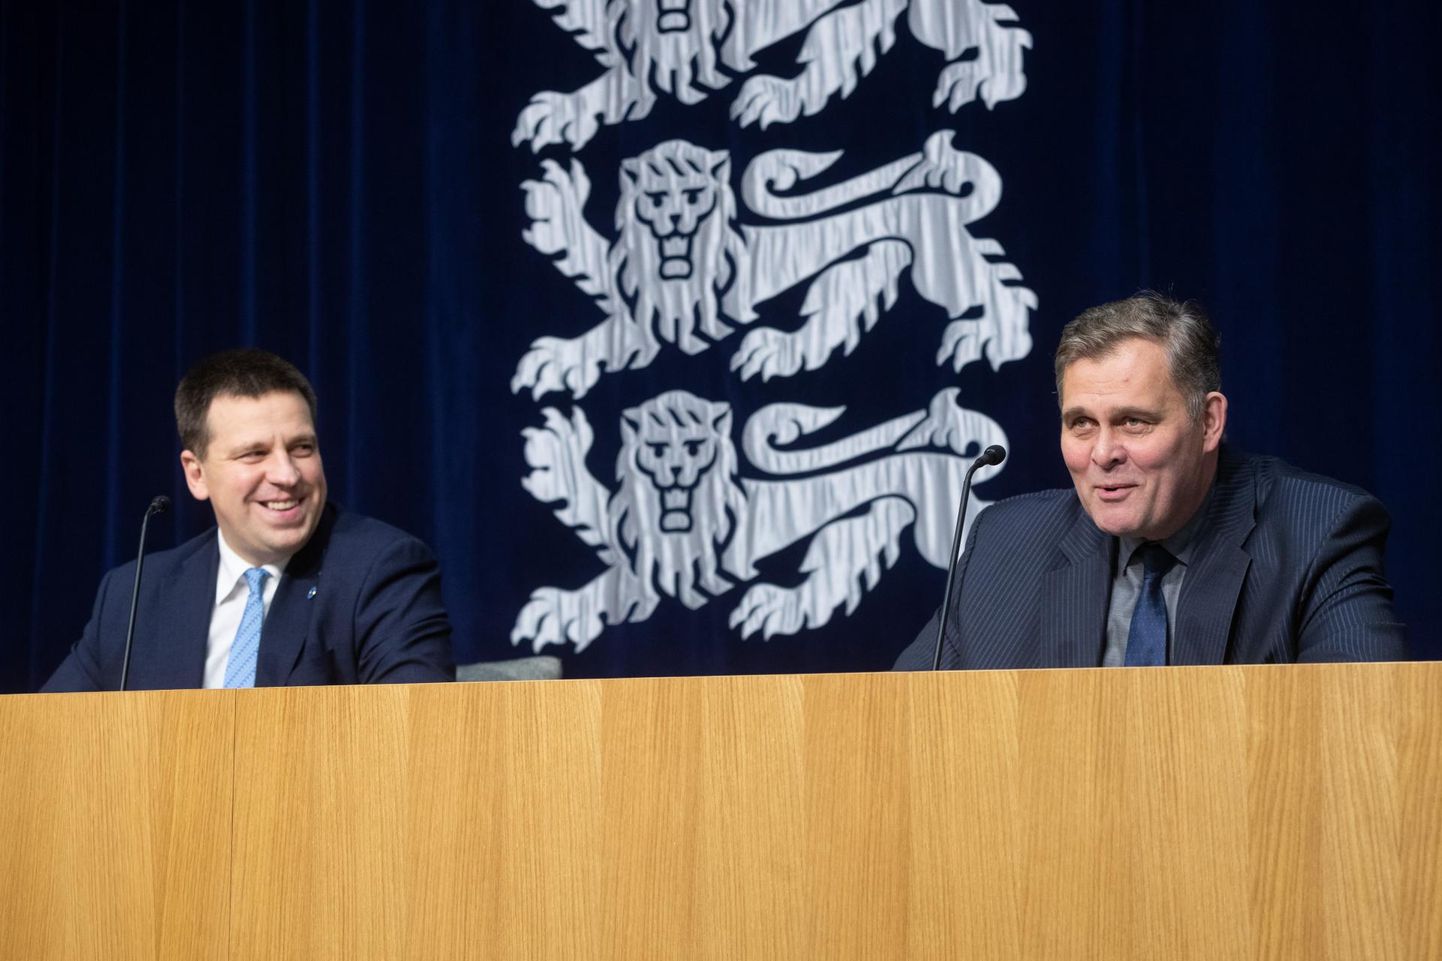 Valitsuse pressikonverents 12. novembril. Pildil Jüri Ratas ja Raivo Aeg.